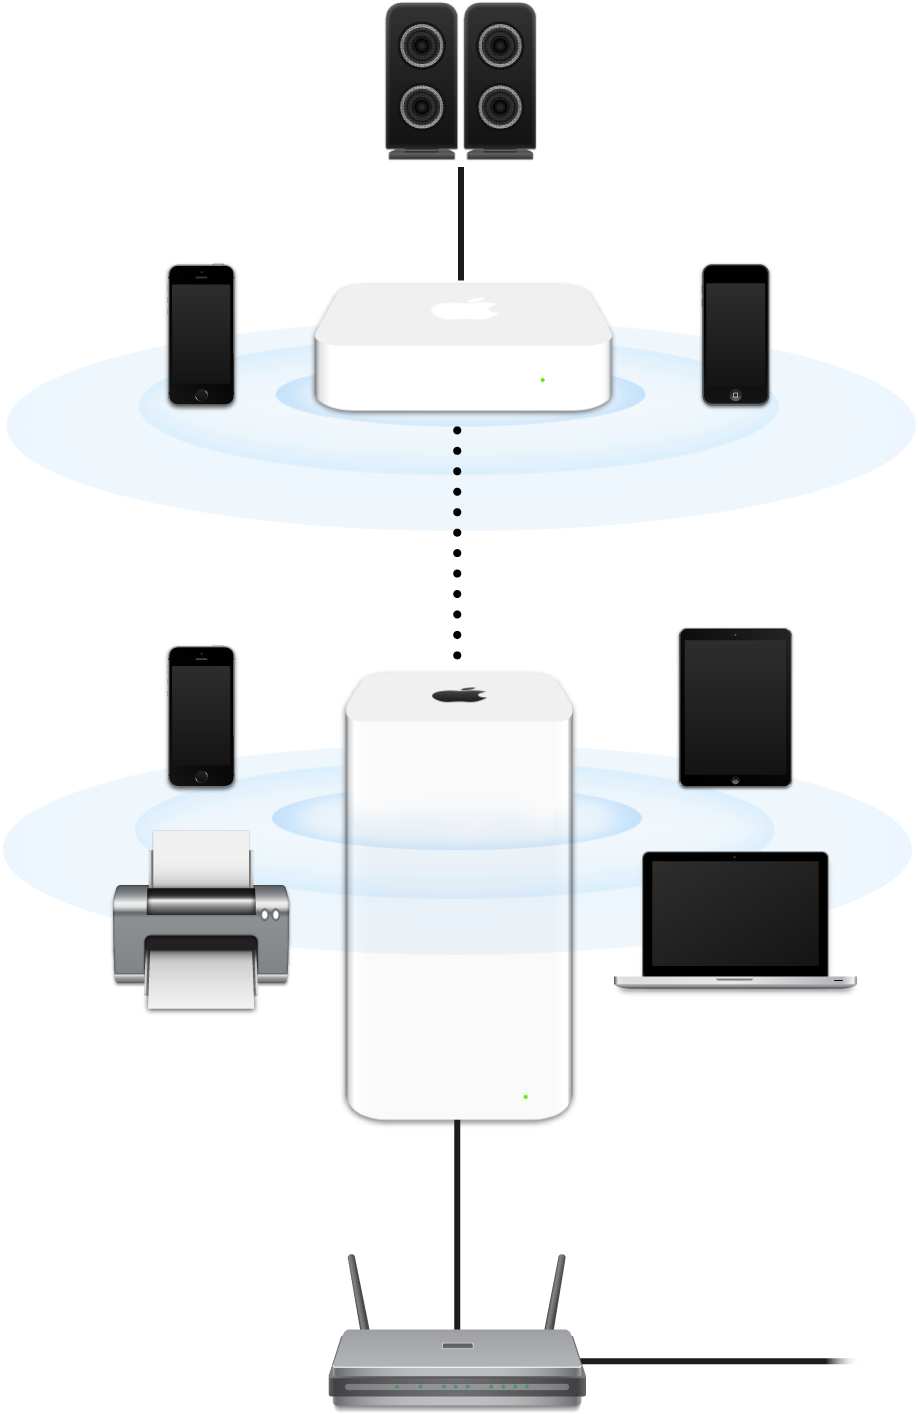 شبكة موسّعة، تتضمن AirPort Extreme وAirPort Express، متصلتان بمودم وتقومان بالإرسال إلى أجهزة متنوعة.